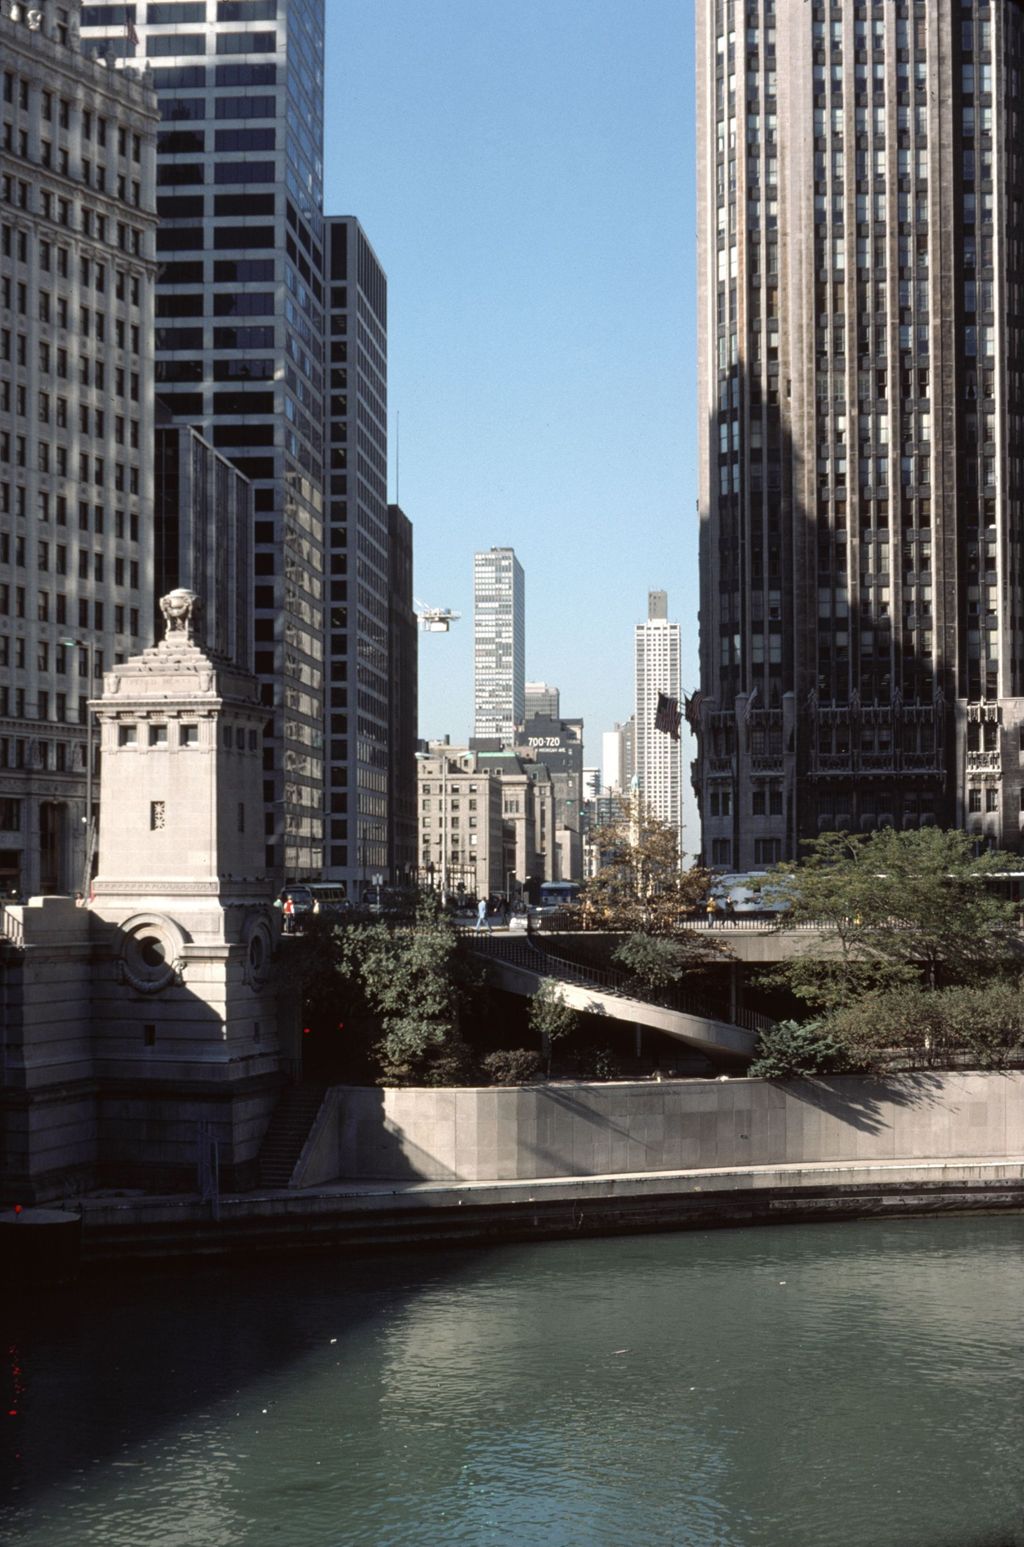 Chicago River and North Michigan Avenue